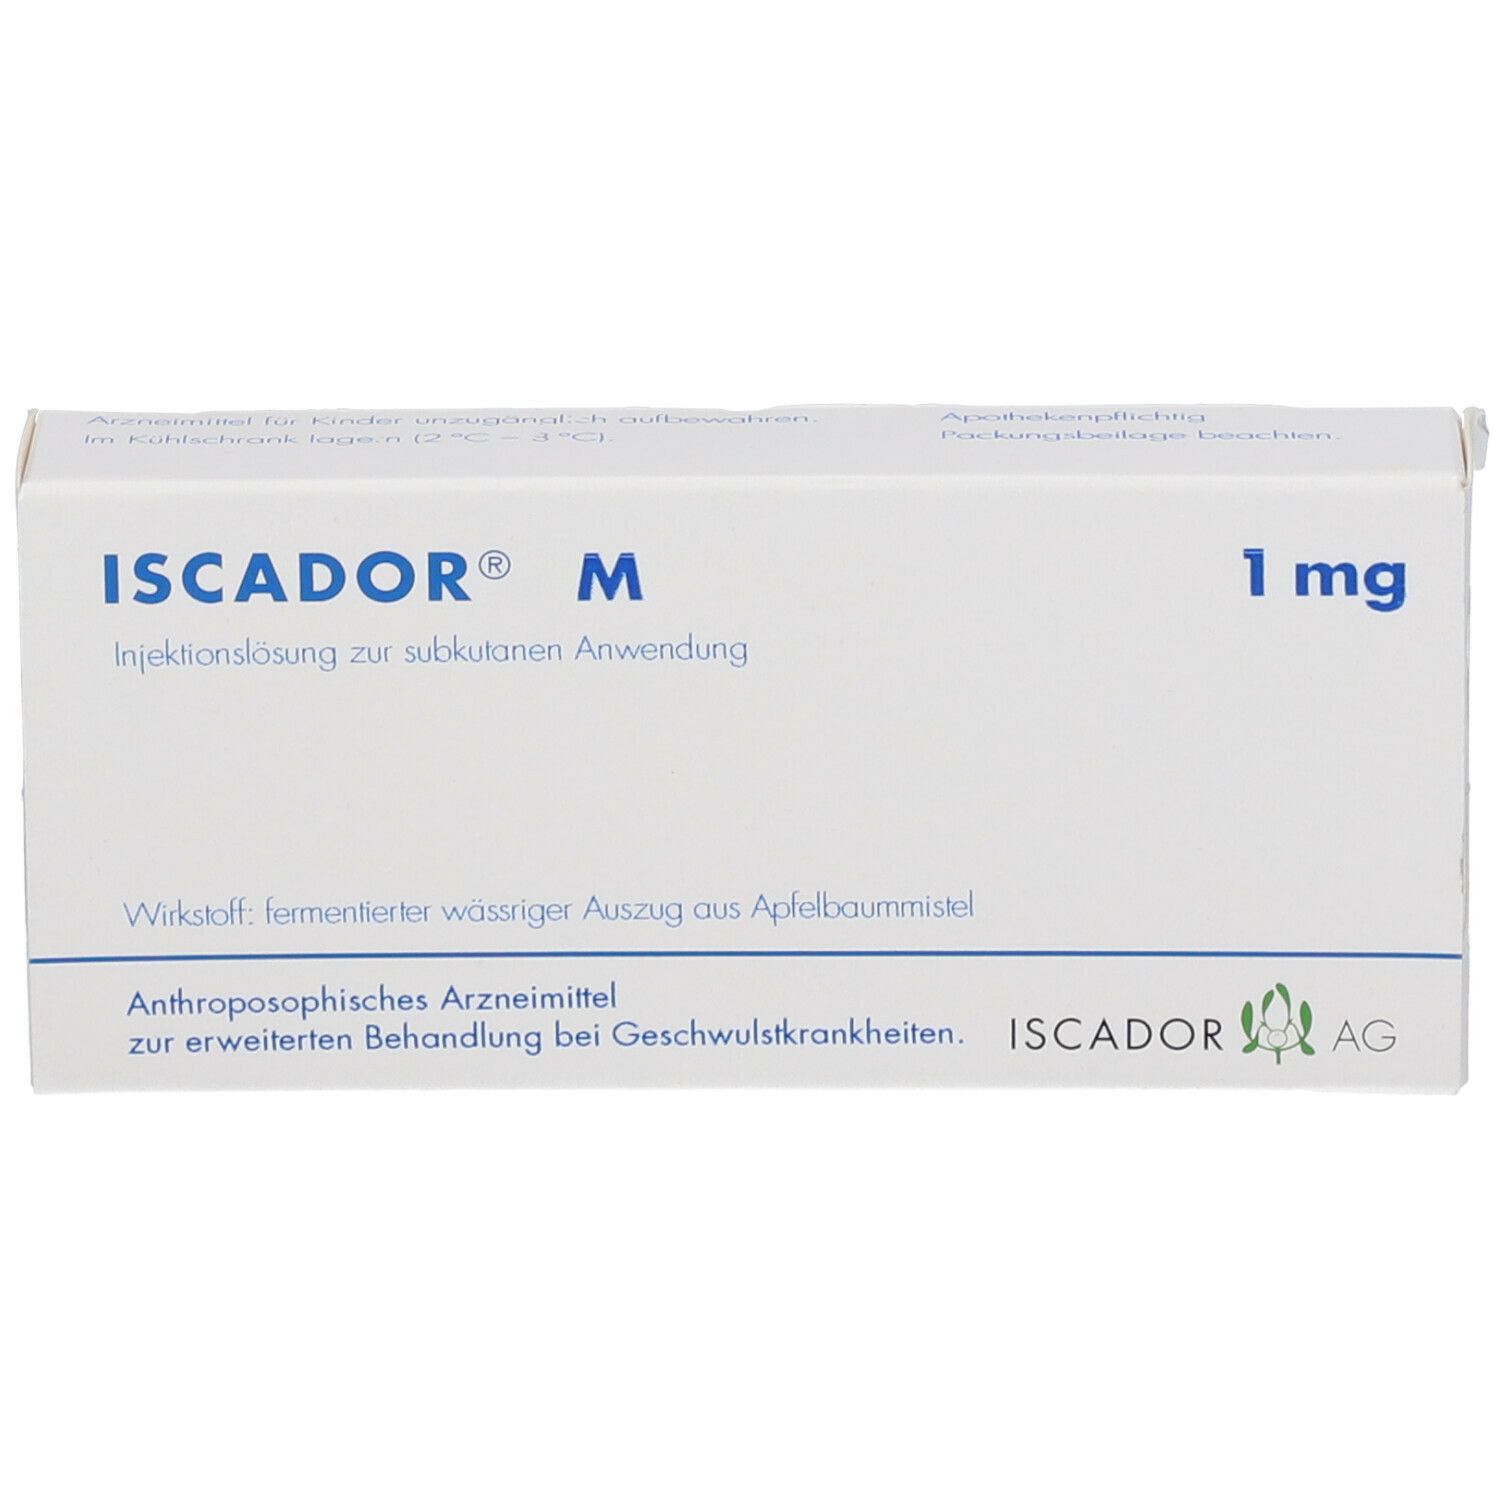 ISCADOR® M 1 mg